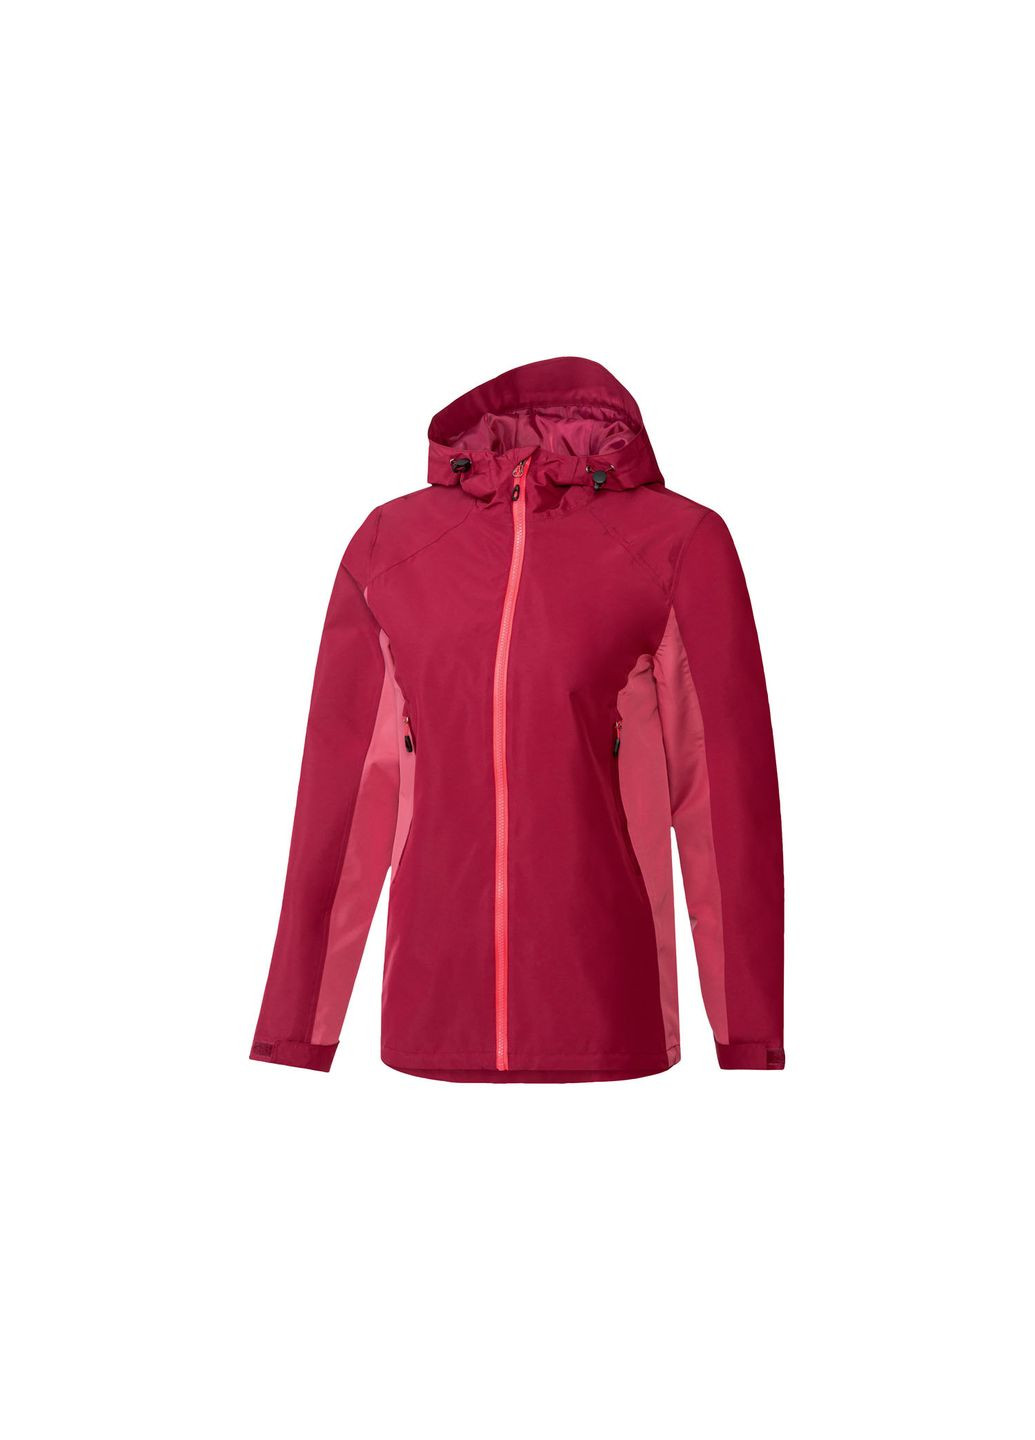 Розовая демисезонная куртка мембранная мембранная (3000мм) для женщины lidl 375446 44(l) ROCKTRAIL